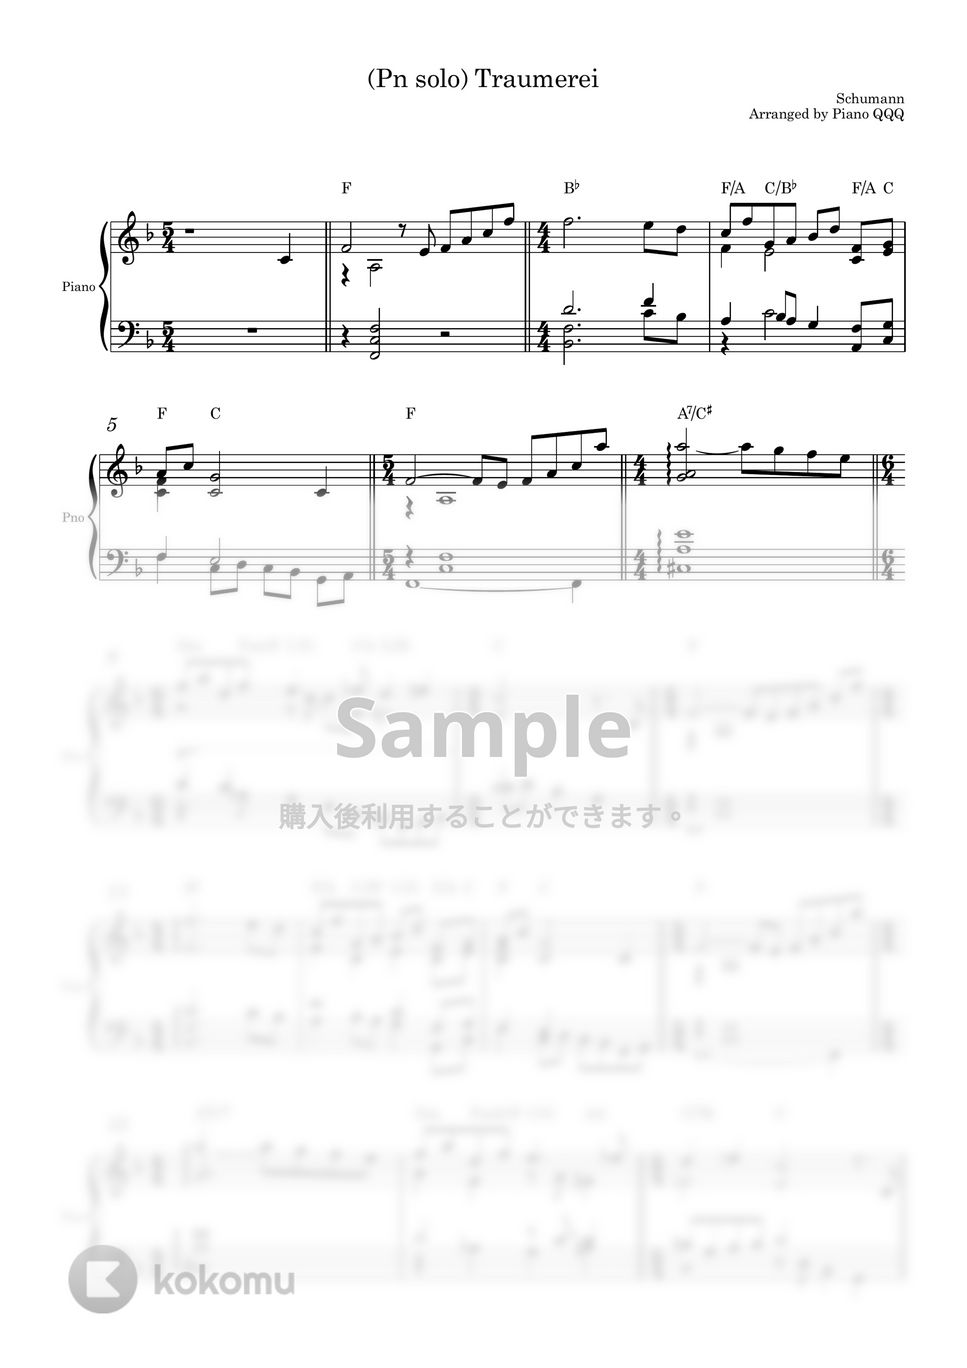 シューマン - トロメライ (ピアノソロ用楽譜) by Piano QQQ